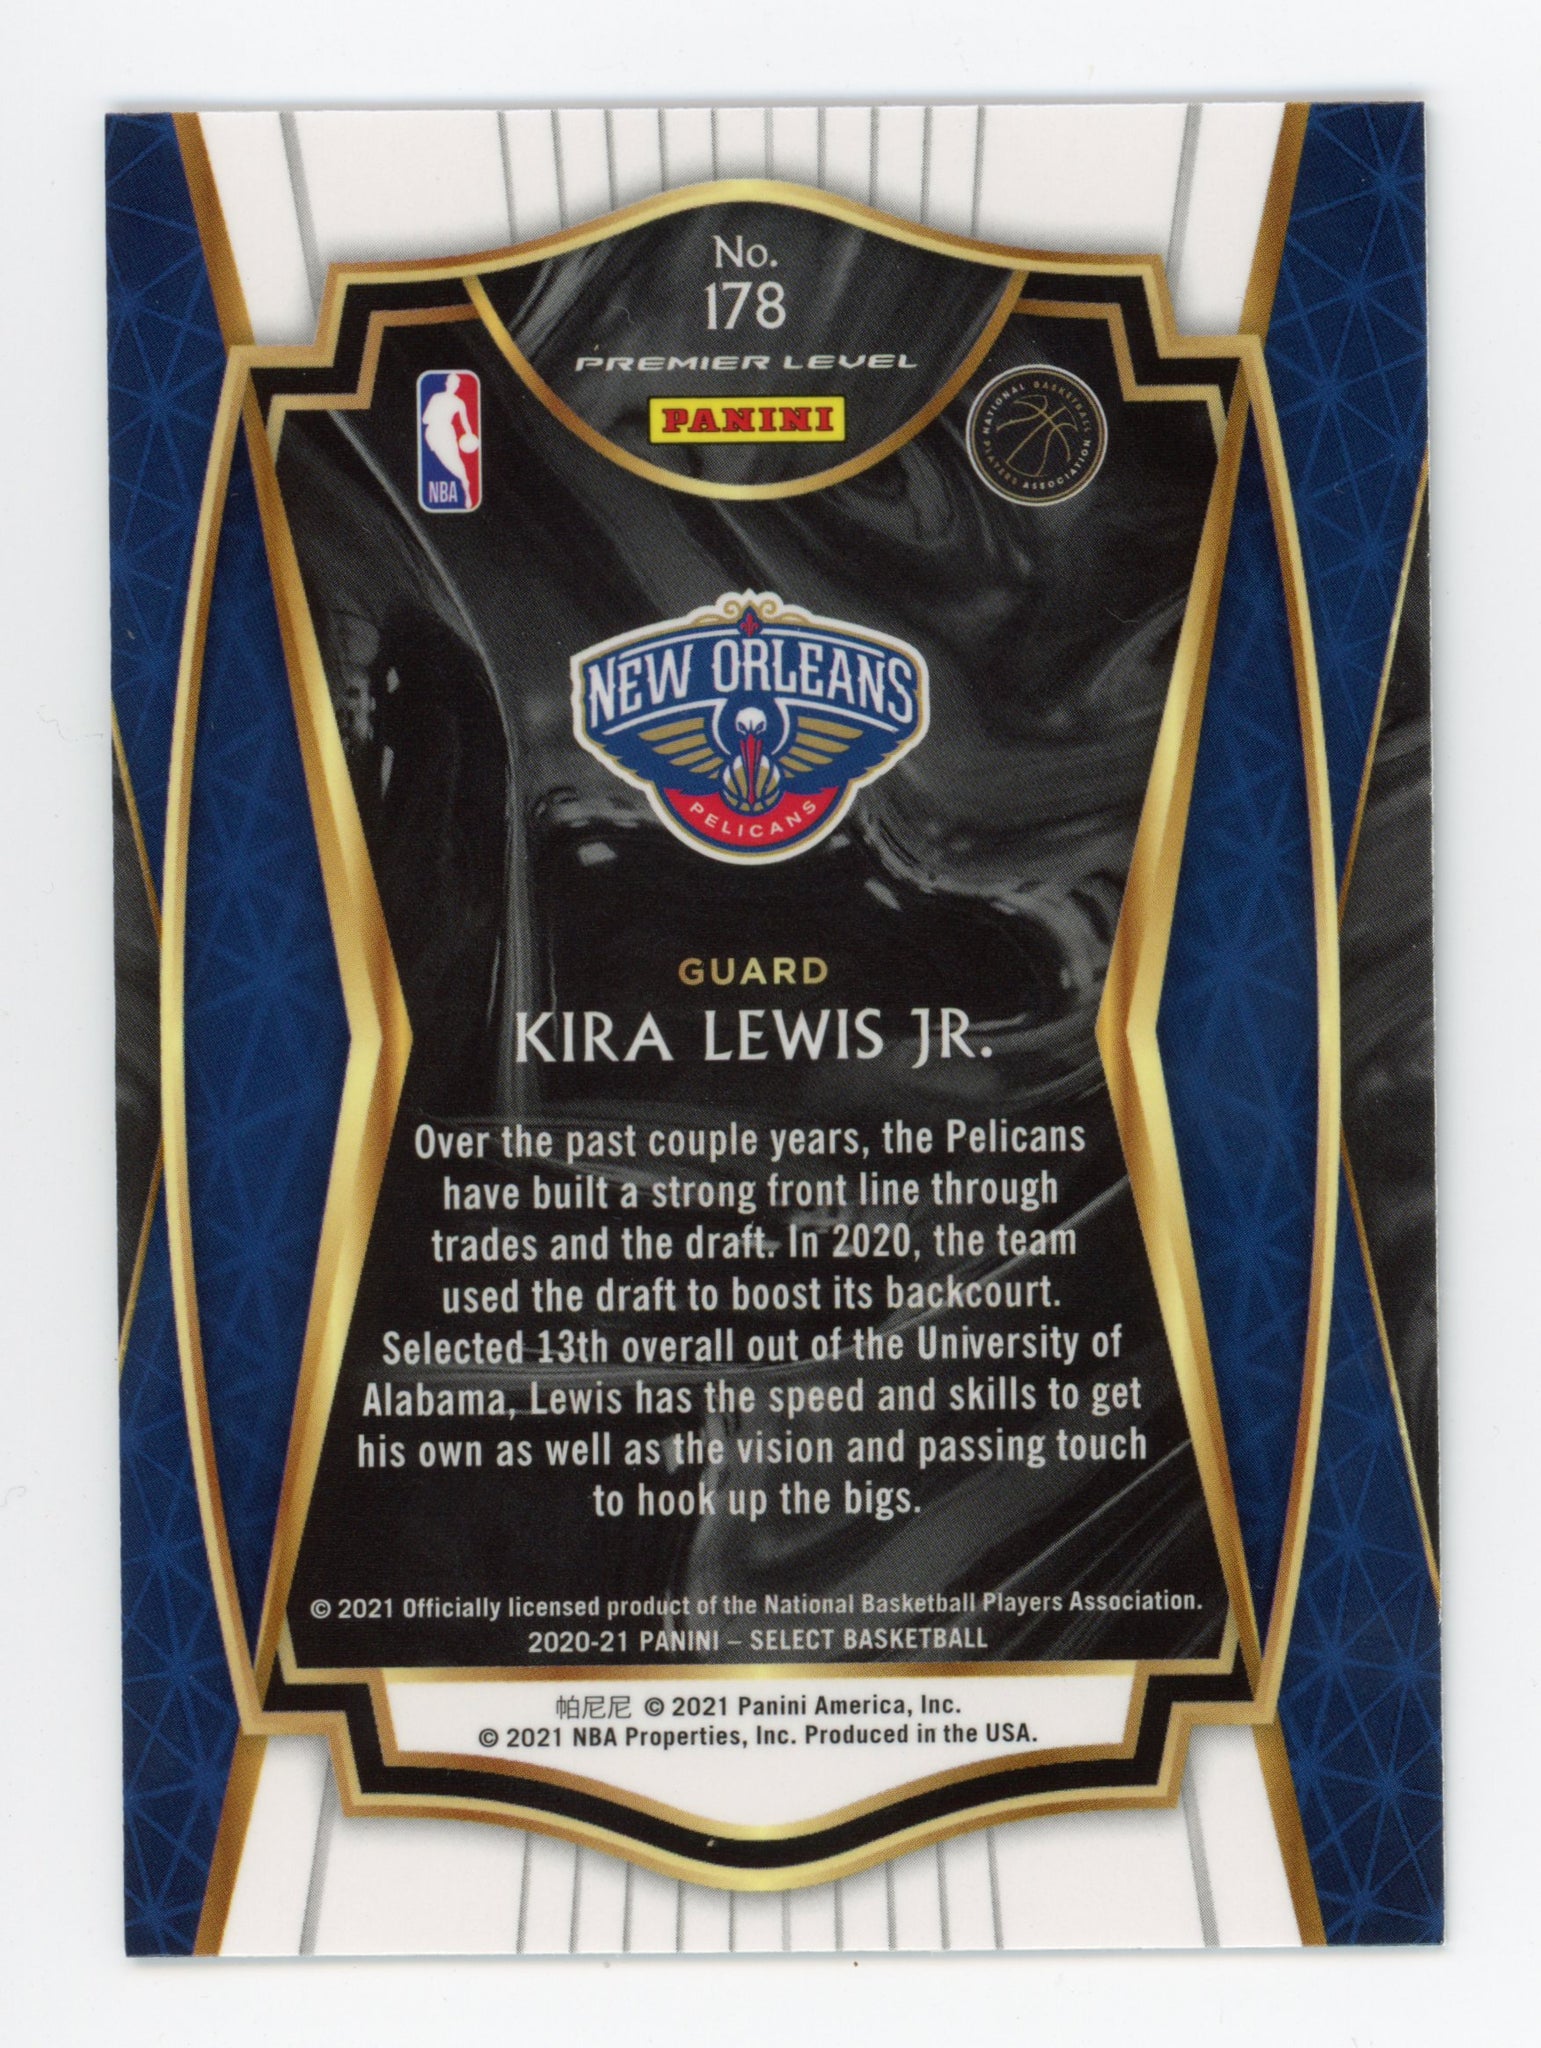 2020-2021 Kira Lewis Jr Rookie Premier Level Panini New Orleans Pelicans # 178